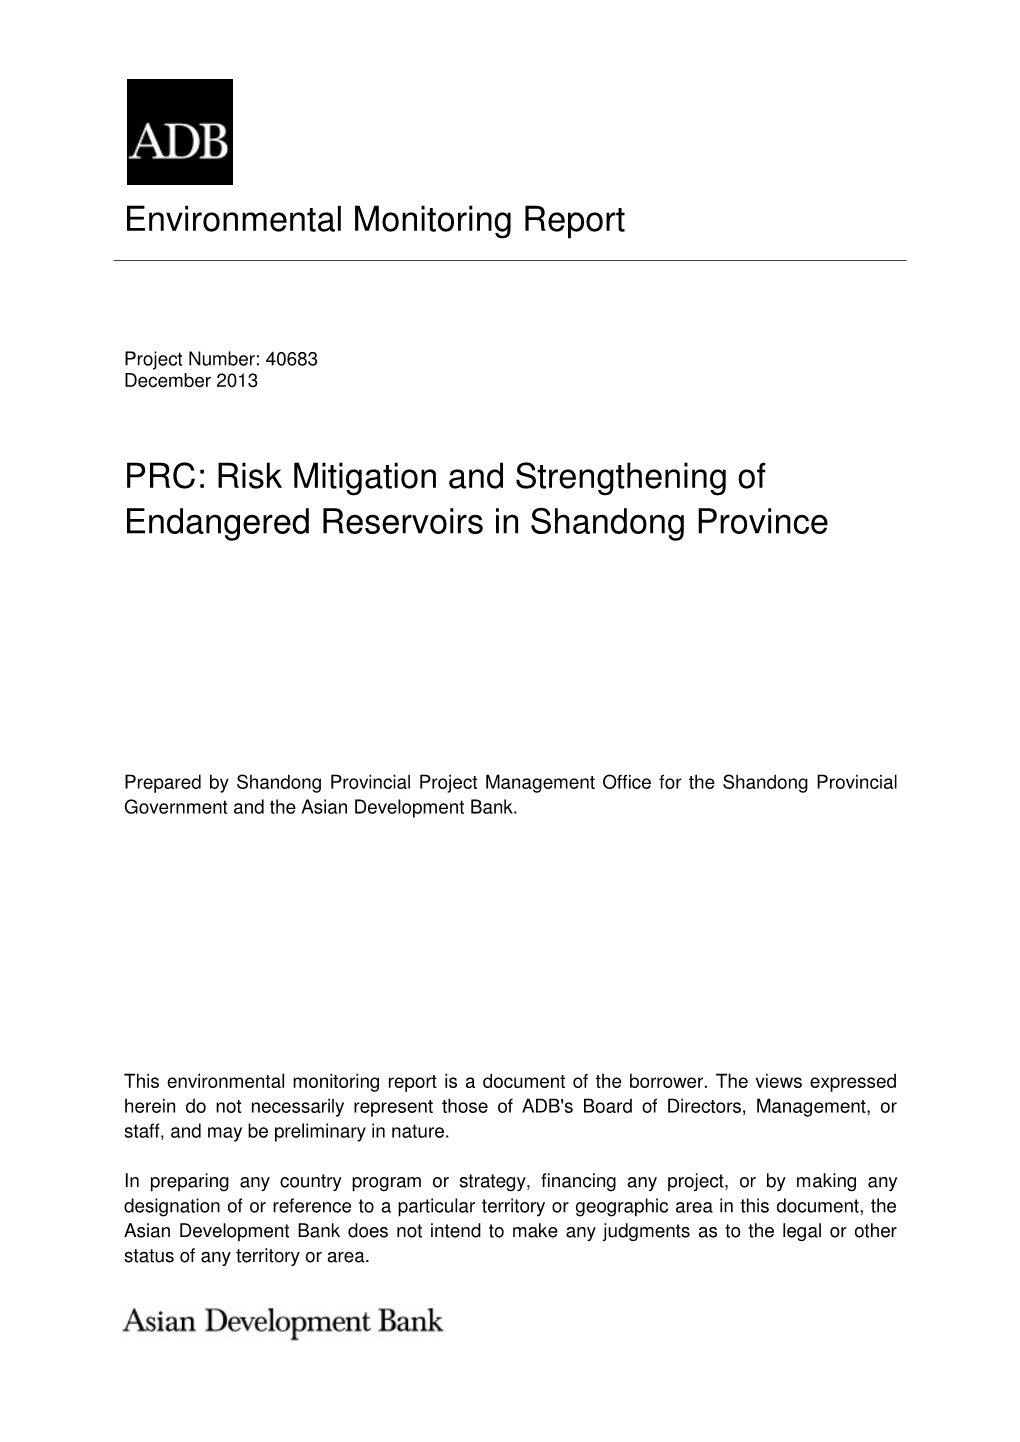 40683-013: Risk Mitigation and Strengthening of Endangered